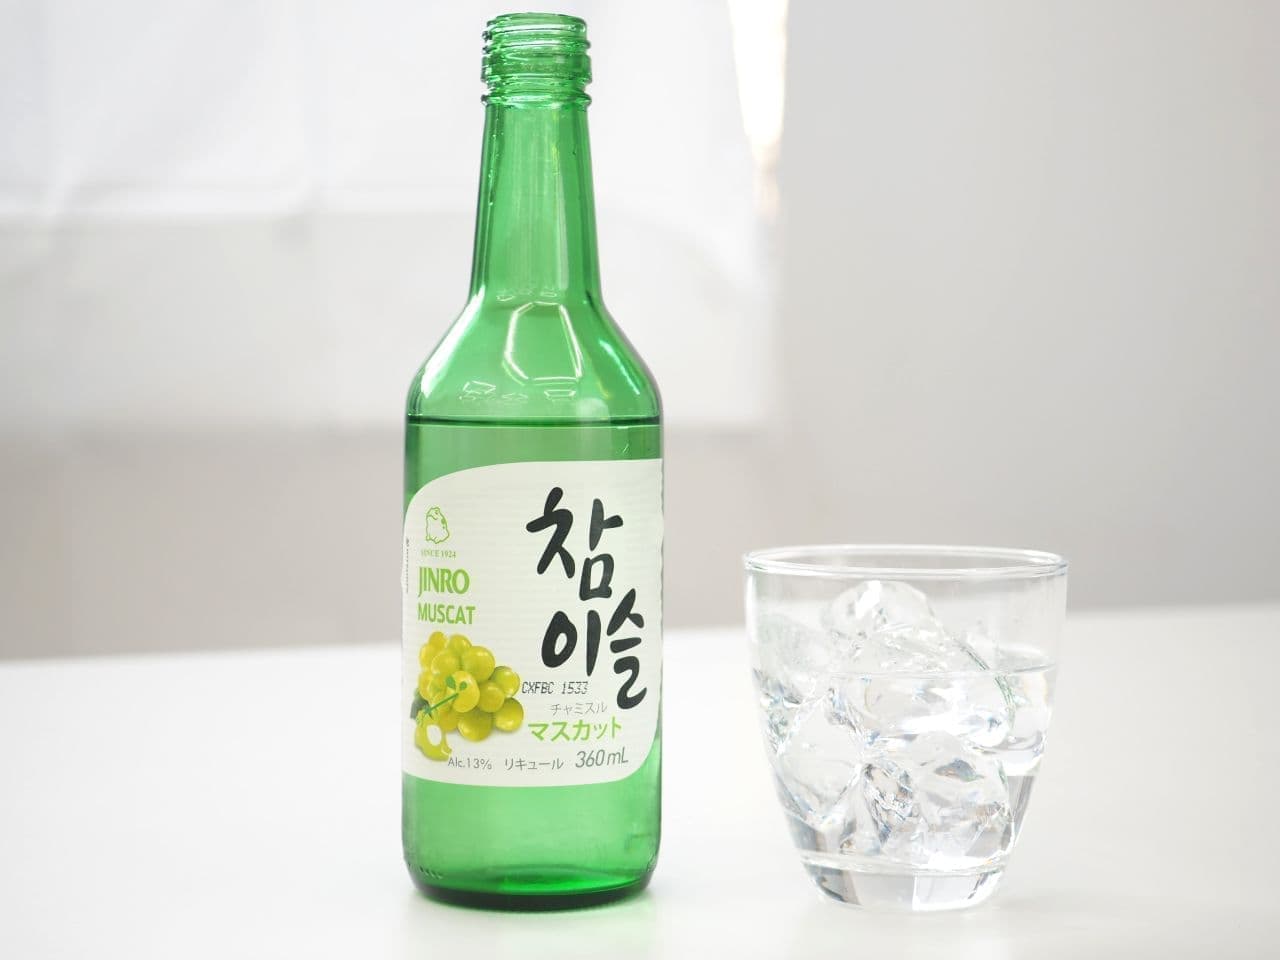 世界で愛飲される韓国のお酒「チャミスル」